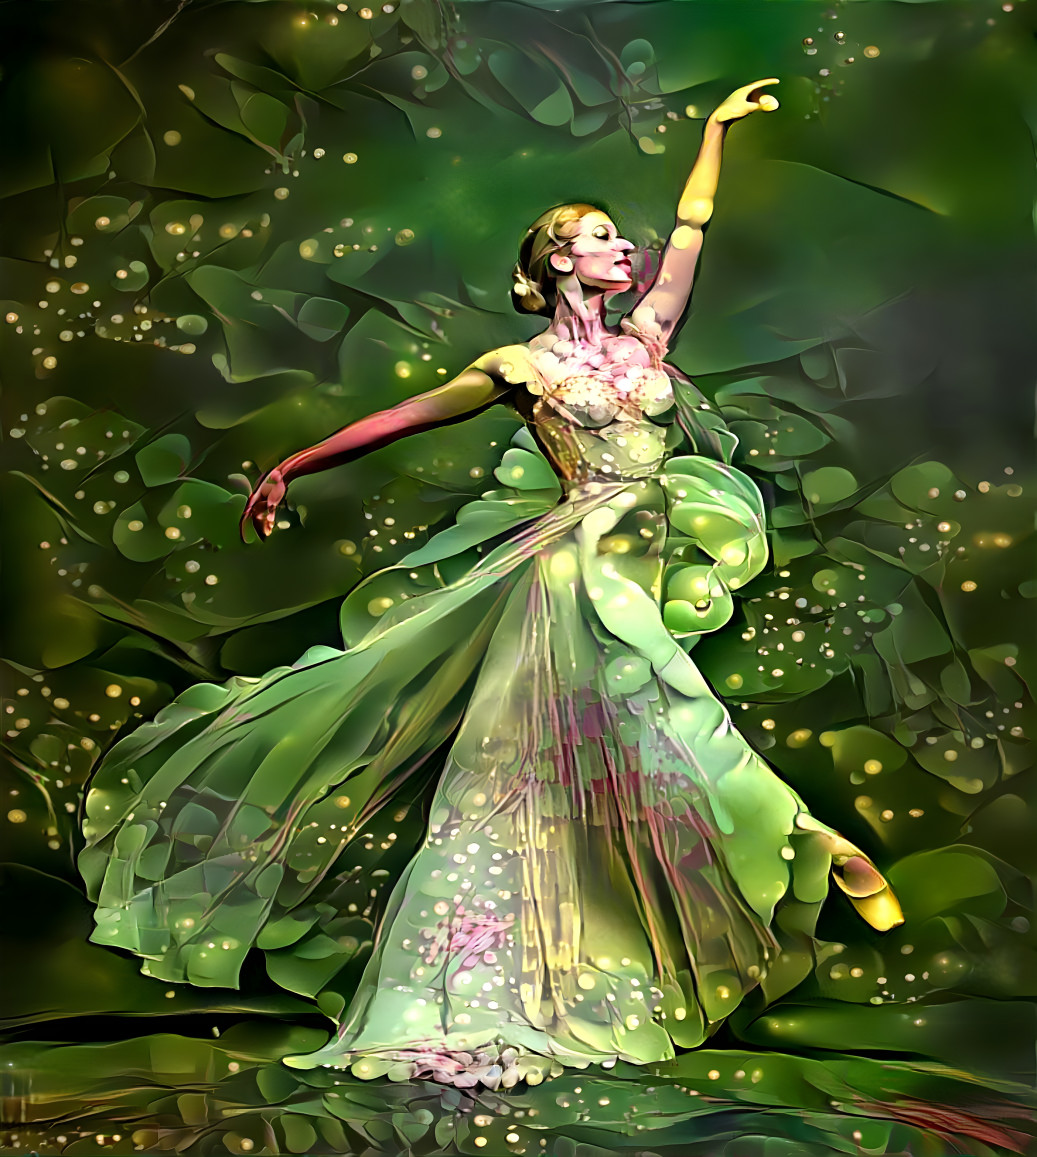 Green dancer